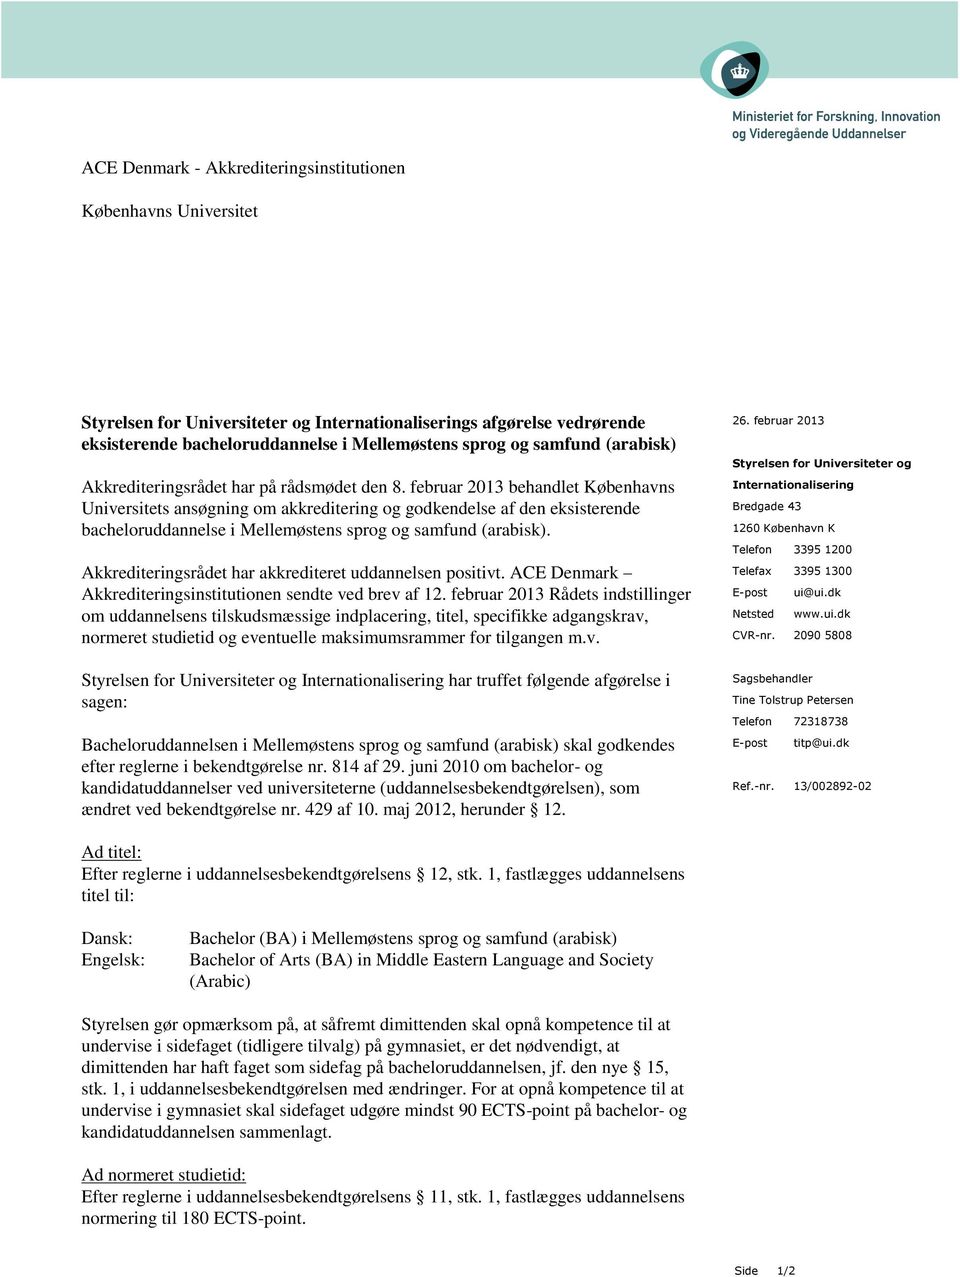 februar 2013 behandlet Københavns Universitets ansøgning om akkreditering og godkendelse af den eksisterende bacheloruddannelse i Mellemøstens sprog og samfund (arabisk).